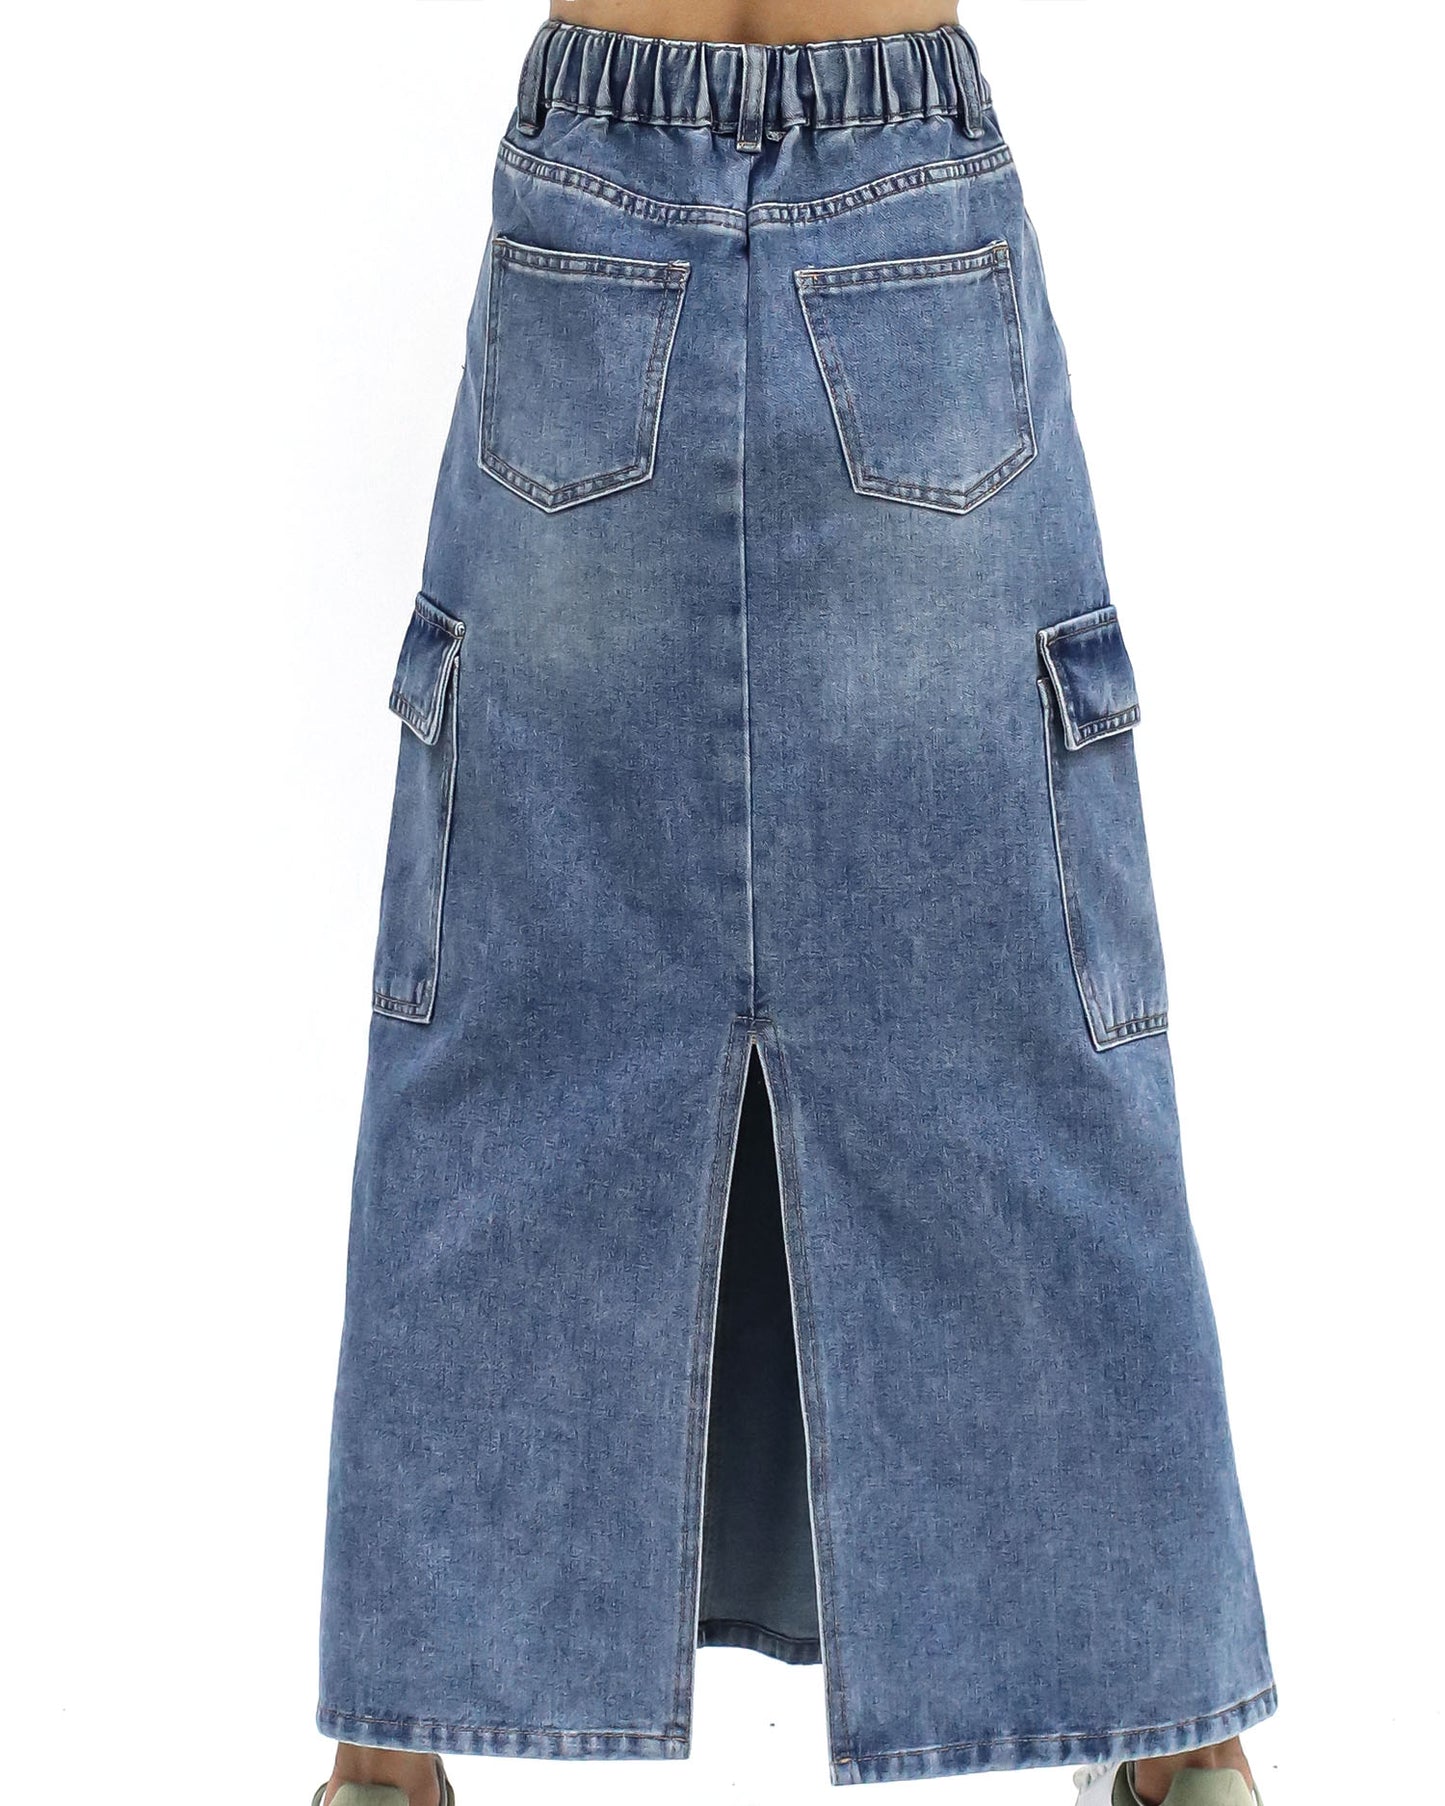 wash blue denim pockets longline skirt *pre-order*